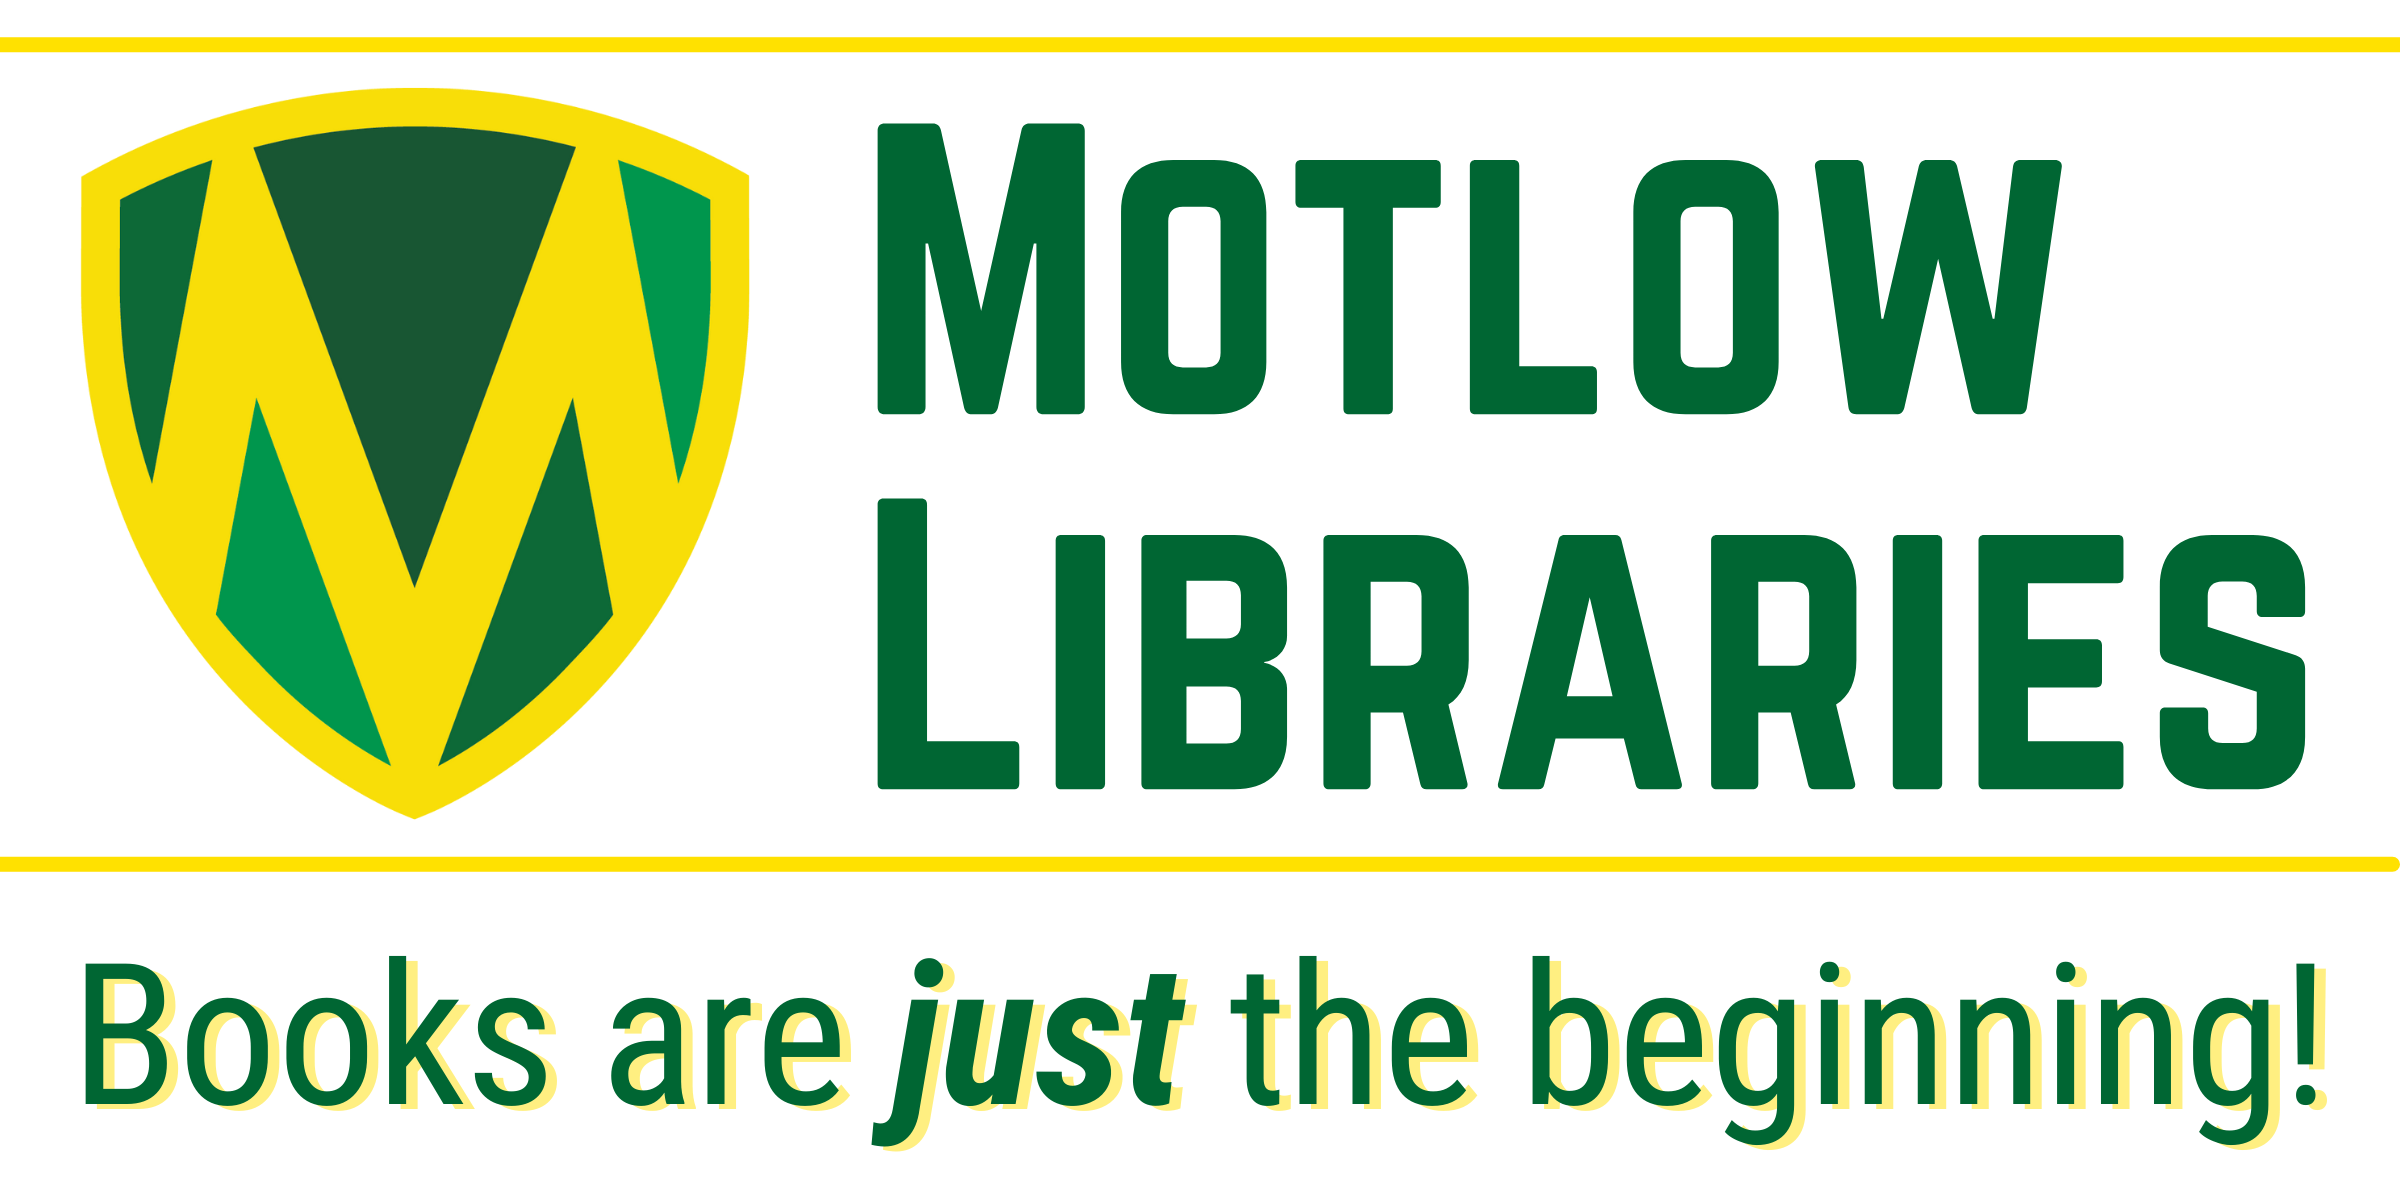 Motlow Libraries